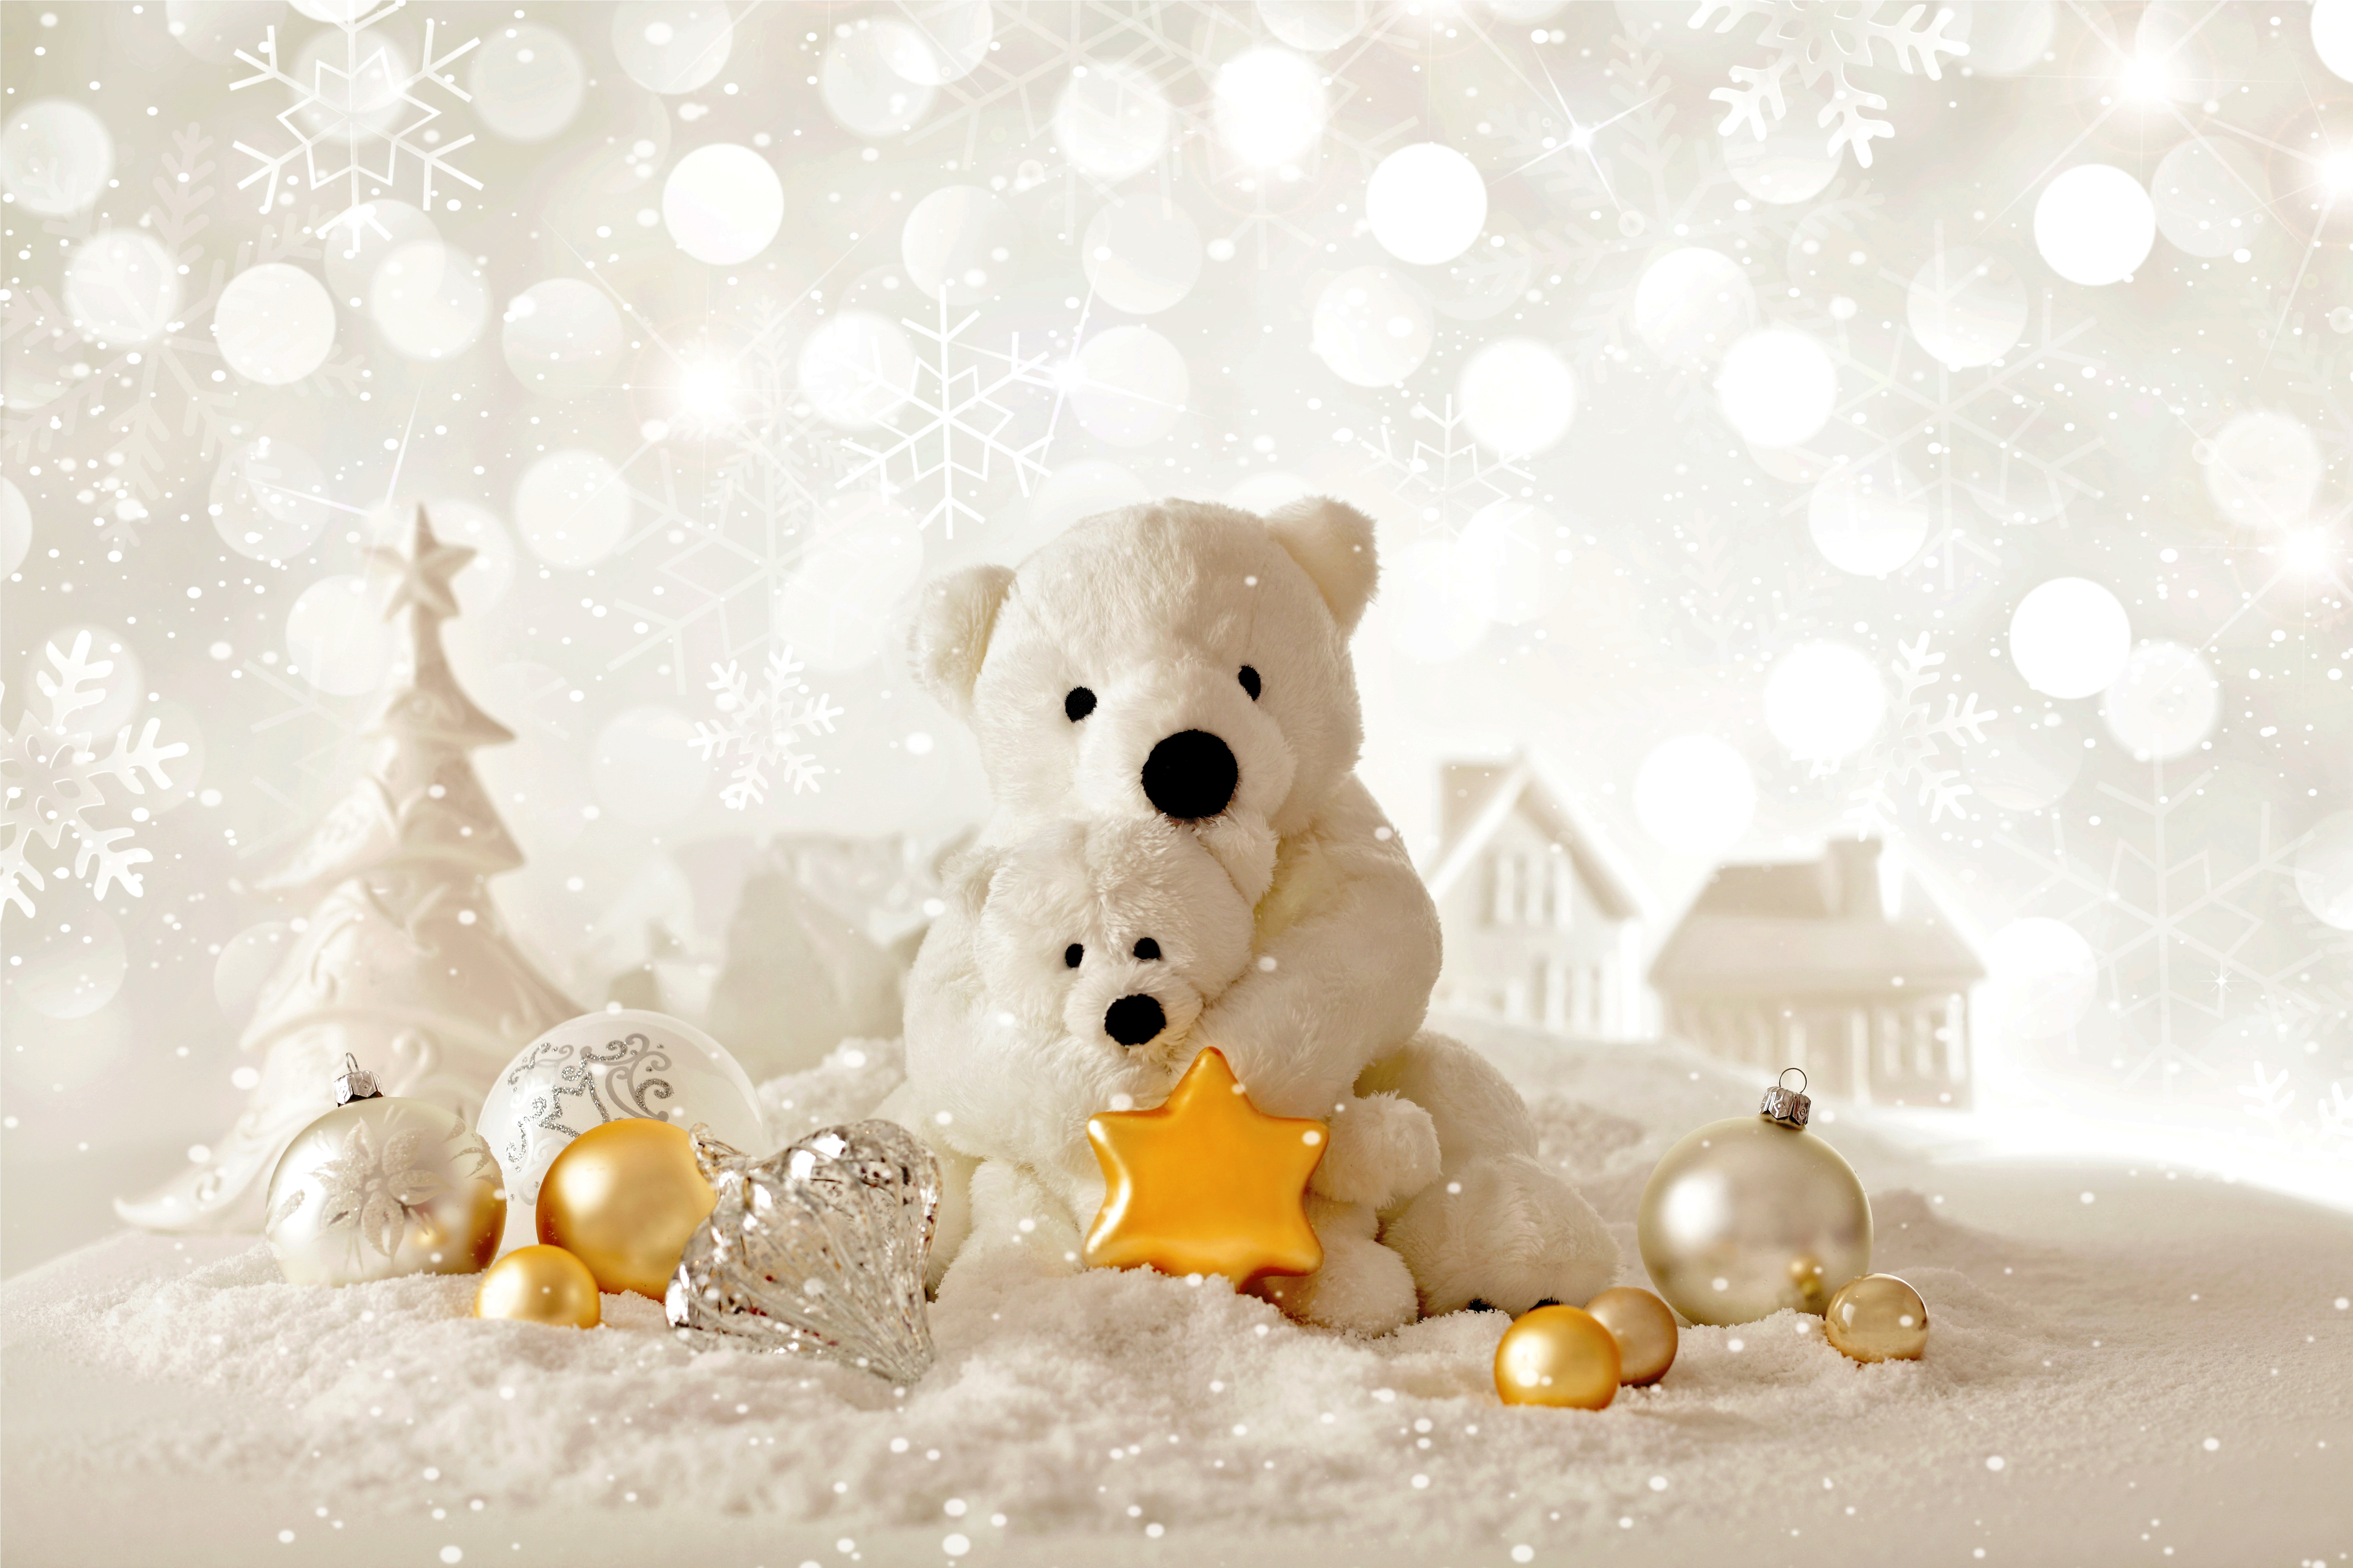 Фигура под елку мишка является неотъемлемой частью новогоднего настроения. Она придаст вашей елке особое очарование и уют, а также станет отличным украшением дома на всю рождественскую неделю.